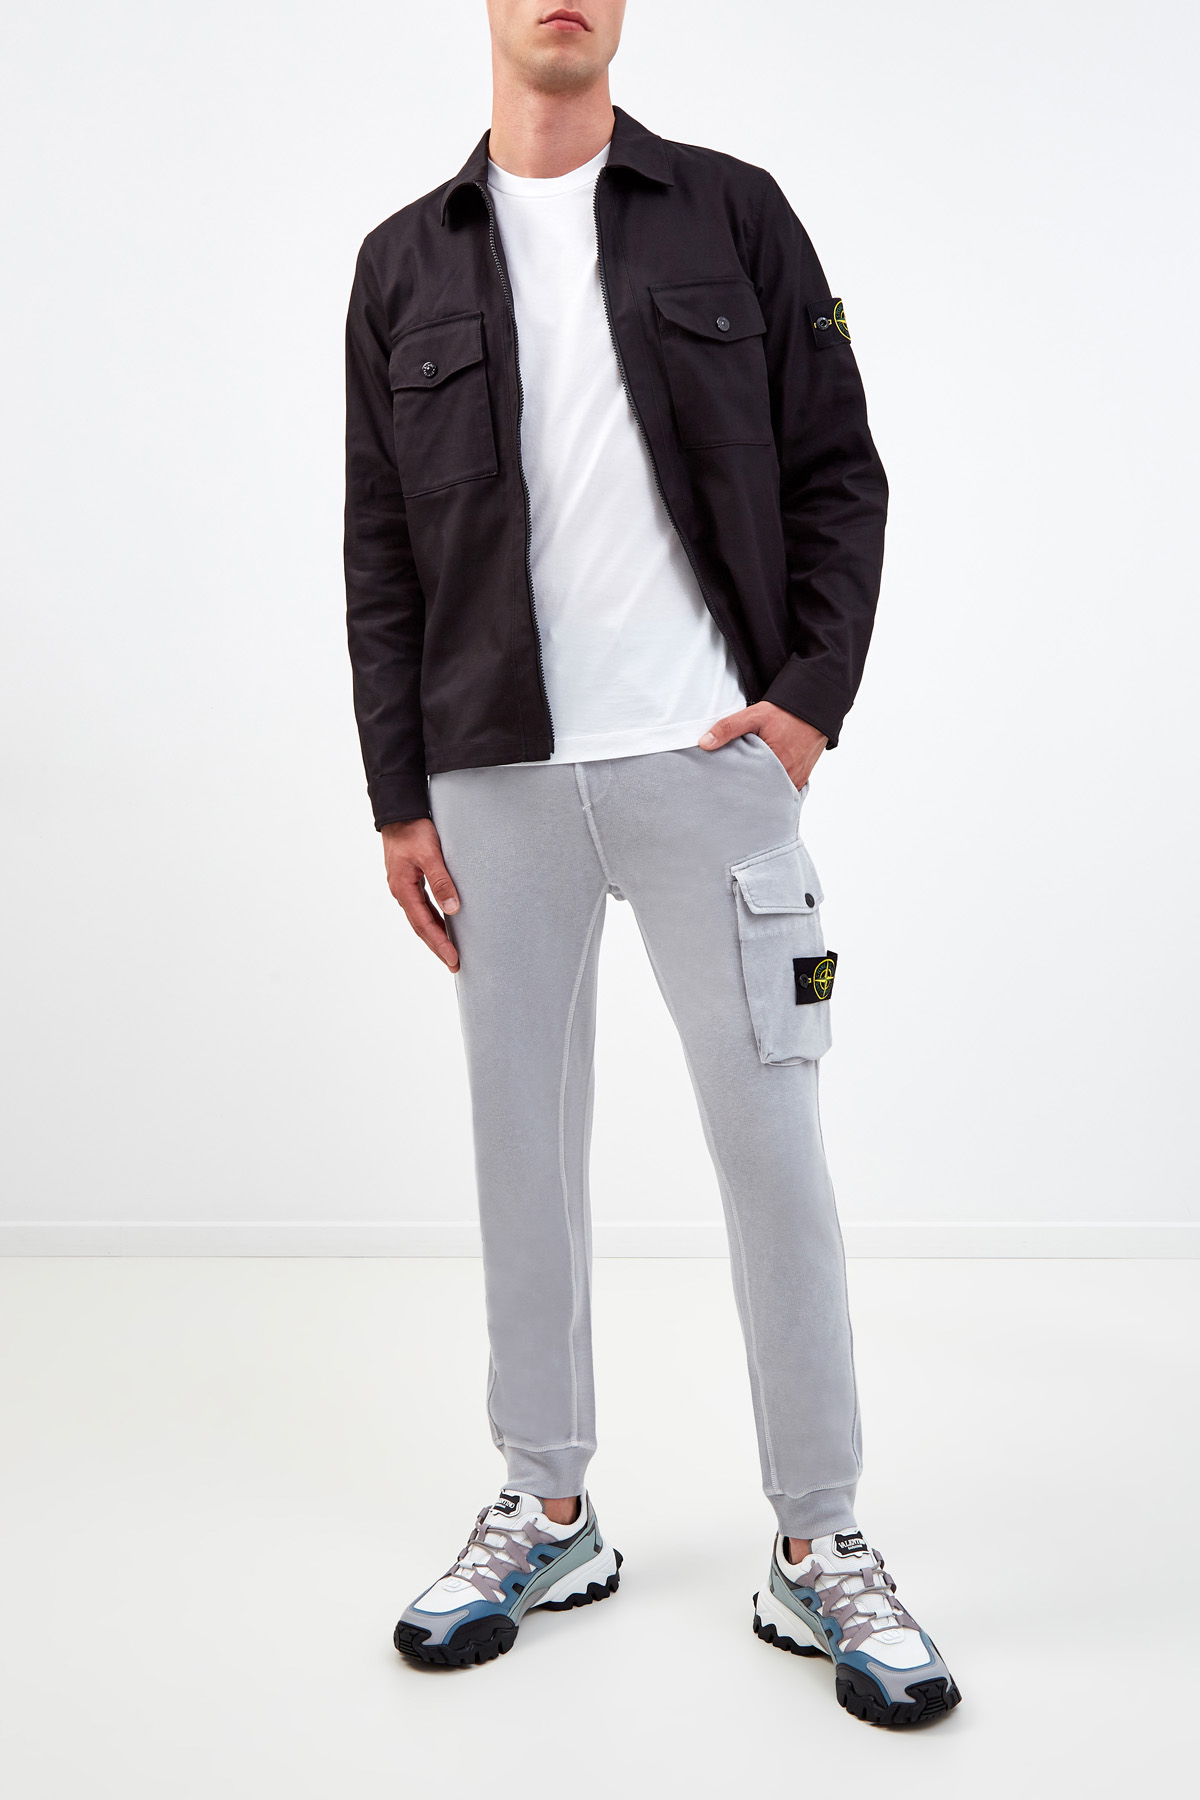 Хлопковая куртка-рубашка с накладными карманами на клапанах STONE ISLAND, цвет черный, размер M;XL;S - фото 2